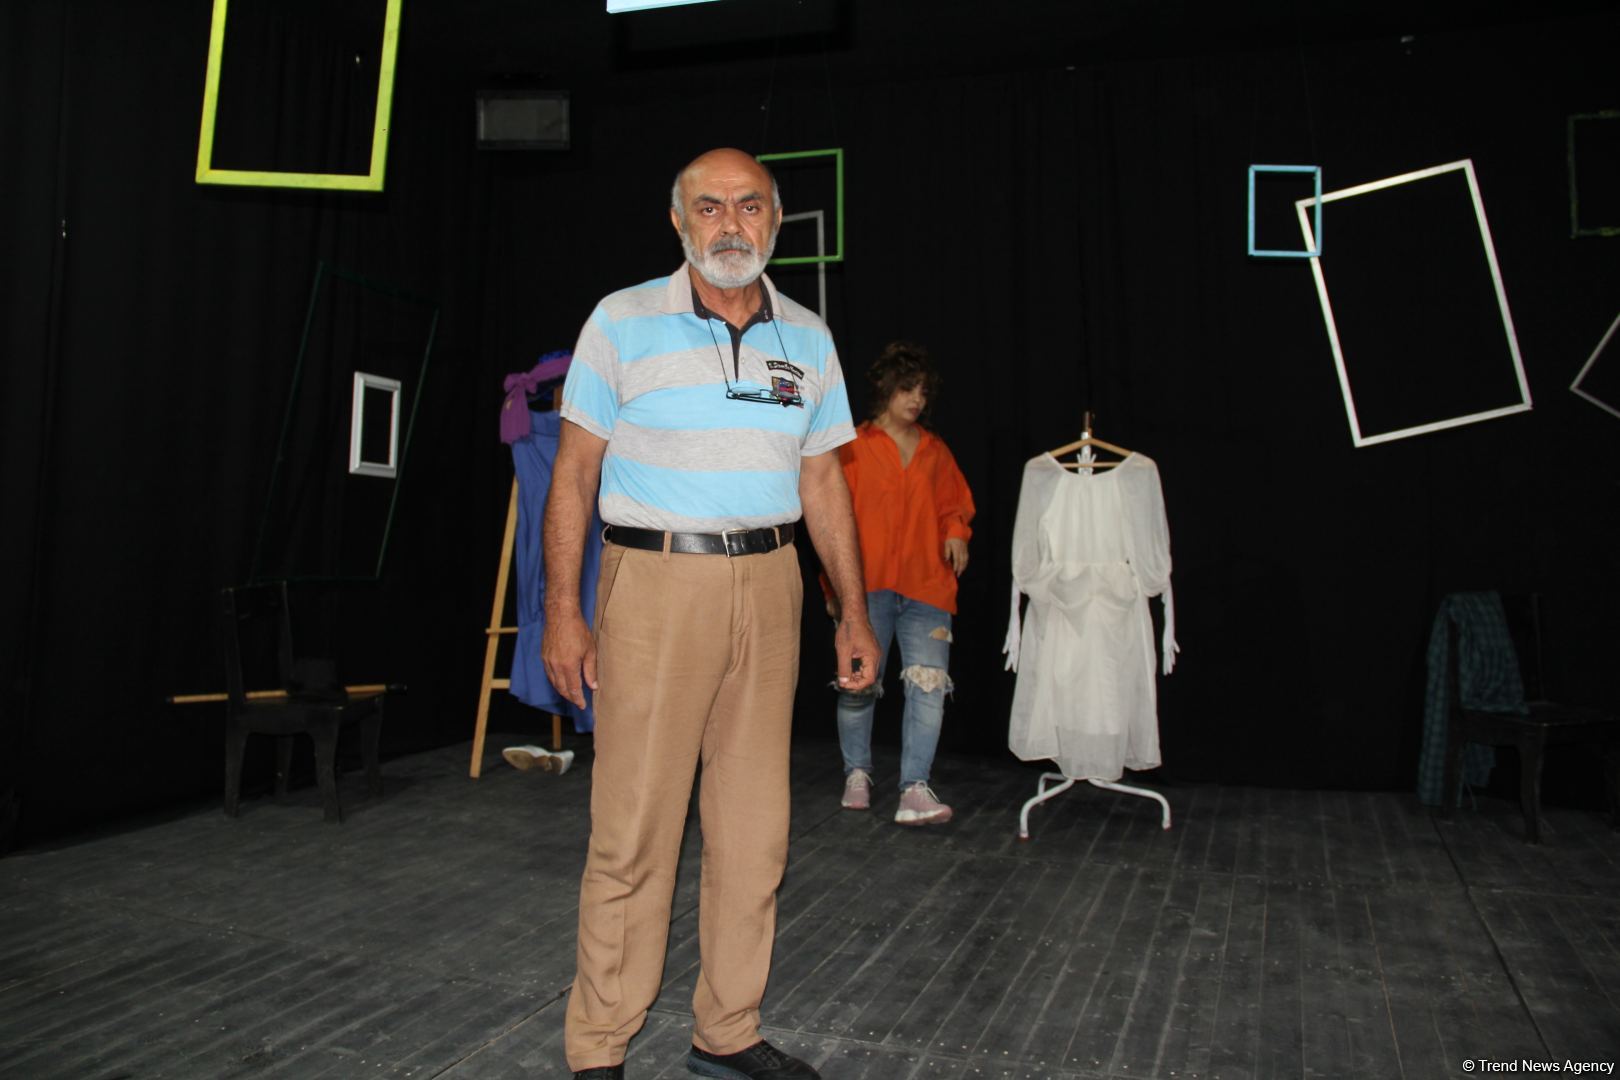 В Баку состоялось открытие независимого M. Teatr с участием известных актеров (ФОТО)